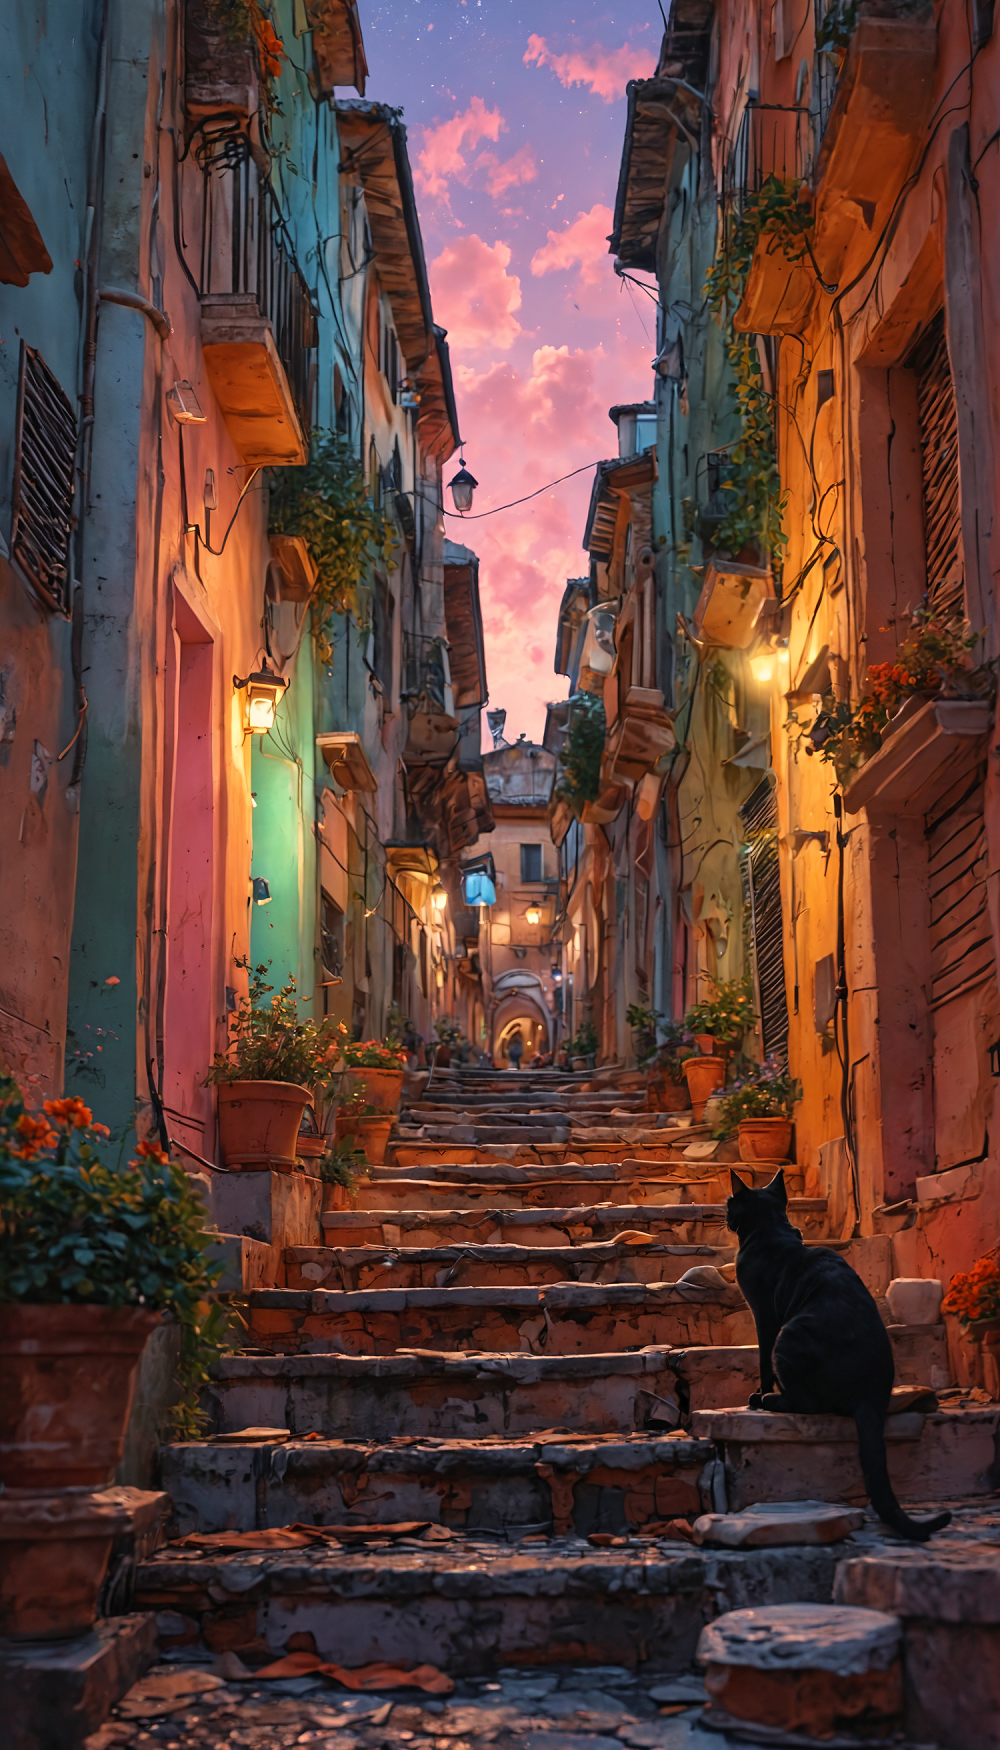 杰作，概念艺术，意大利罗马繁忙的小巷，游客购物，神奇的夜空，黑色 1cat 坐在台阶上观察插图